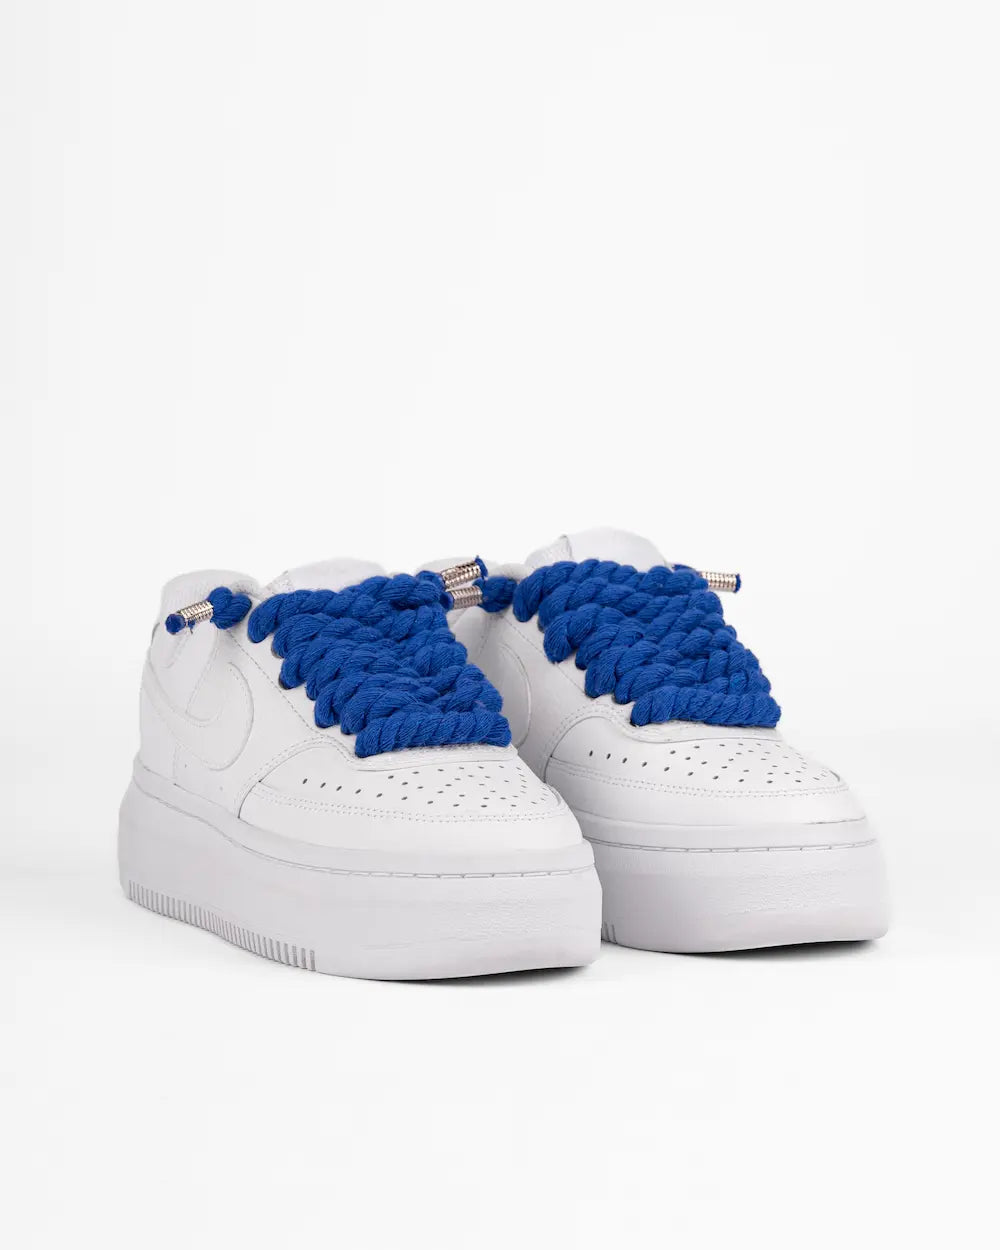 Nike Court Vision Platform personalizzata con lacci in corda grossi blu